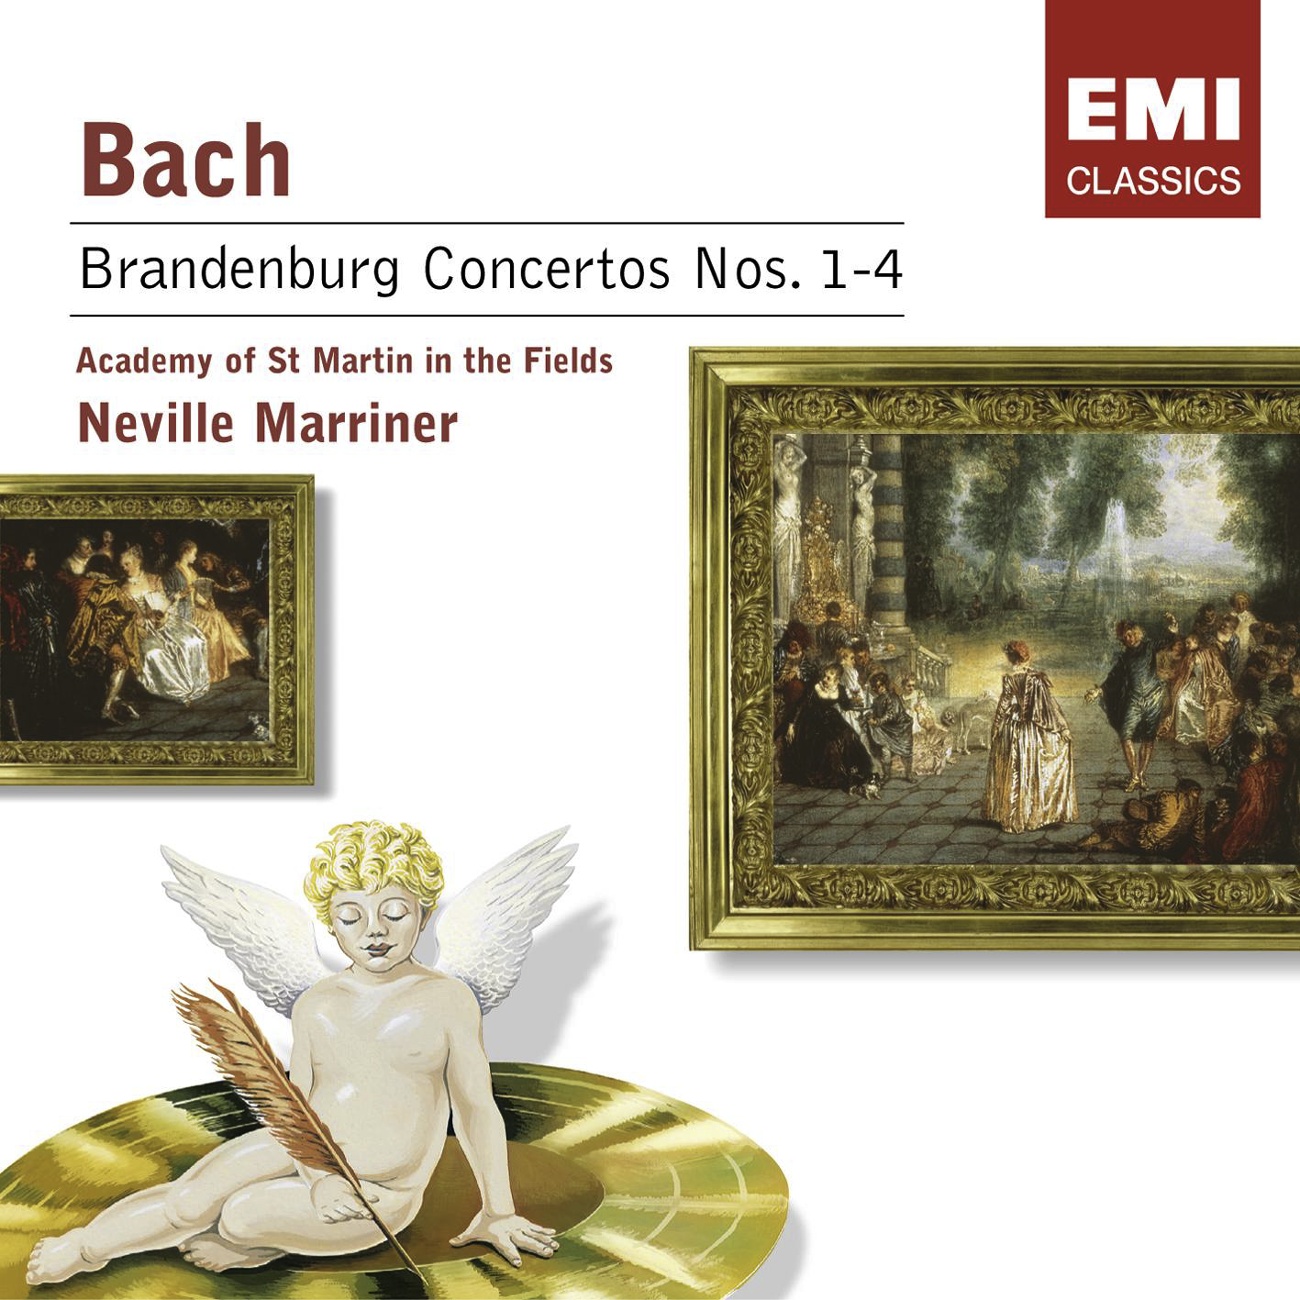 Brandenburg Concerto No. 2 in F, BWV 1047: I.    [Allegro]